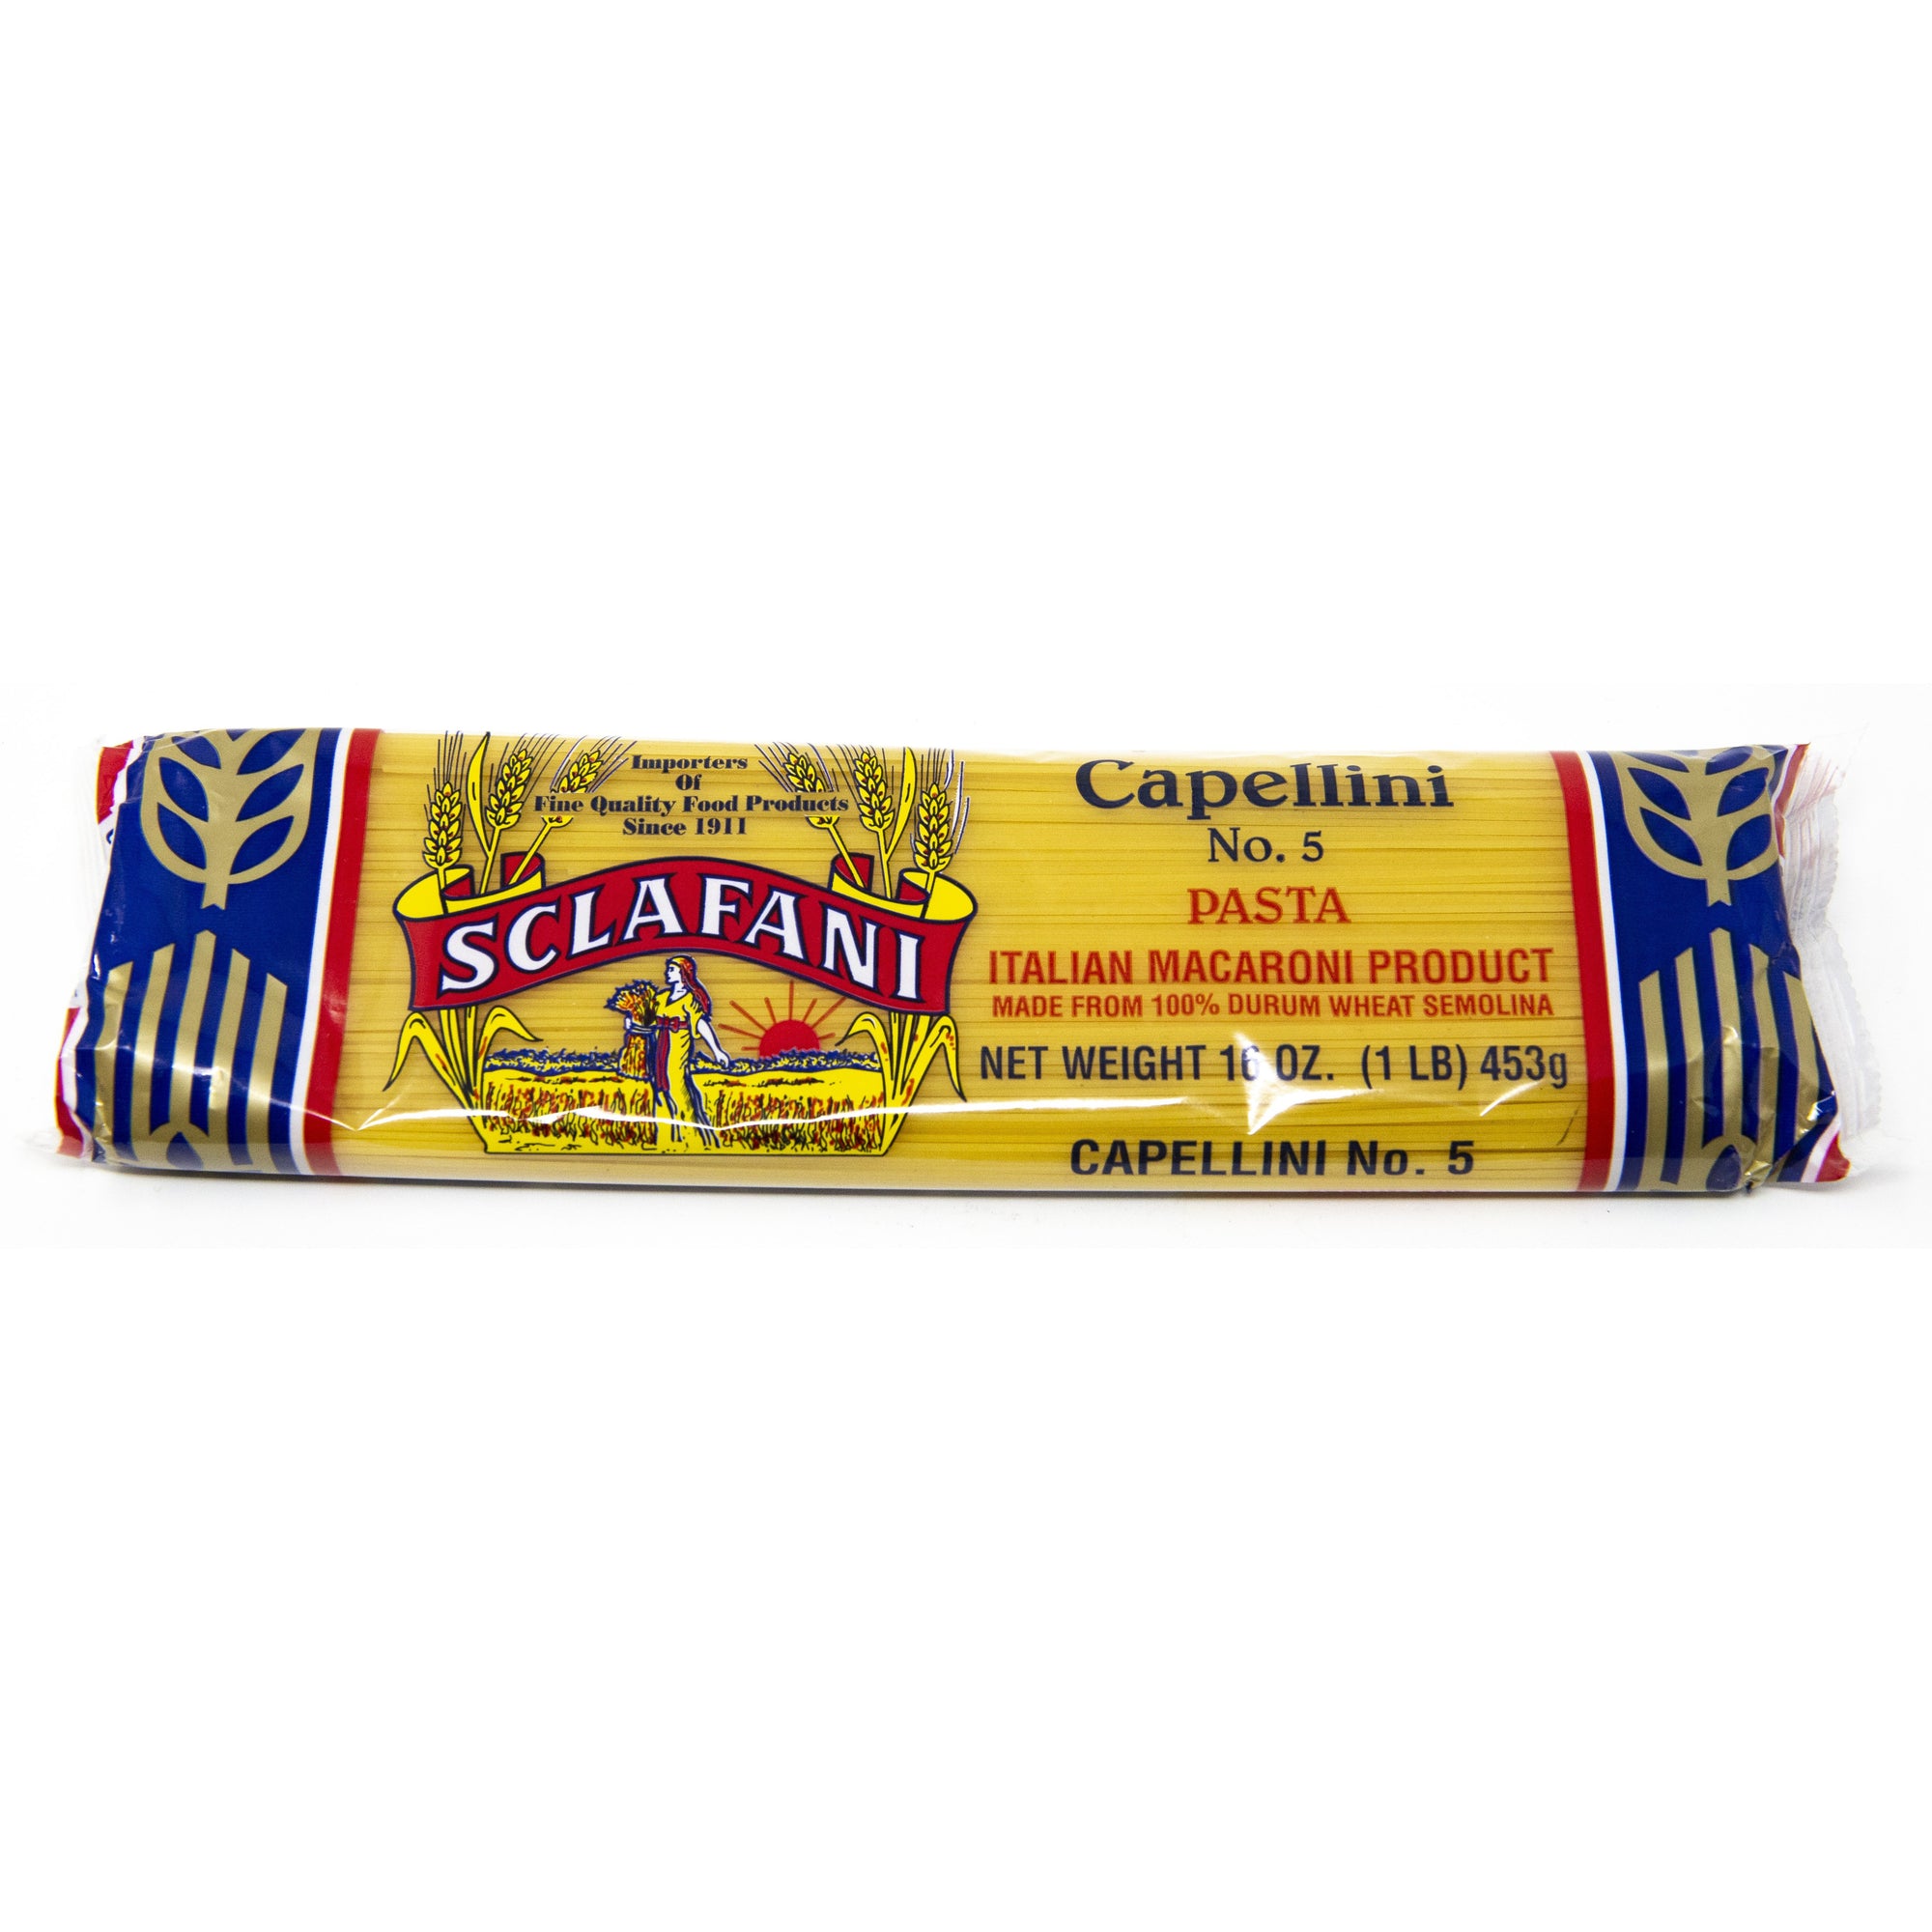 Sclafani Pasta #5 Capellini 1 lb.